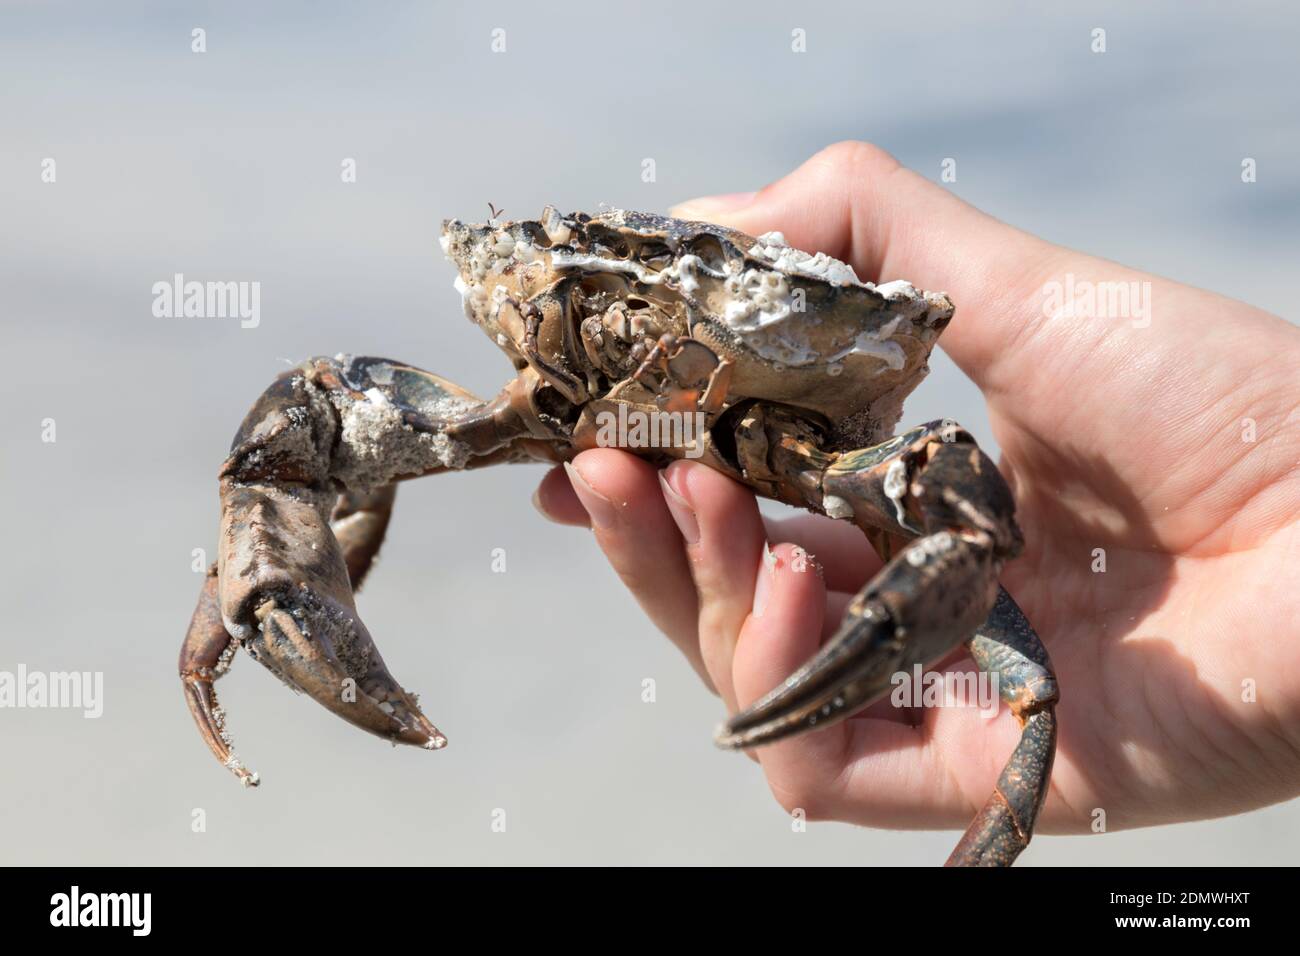 Sosteniendo un cangrejo común de la orilla en la mano Foto de stock